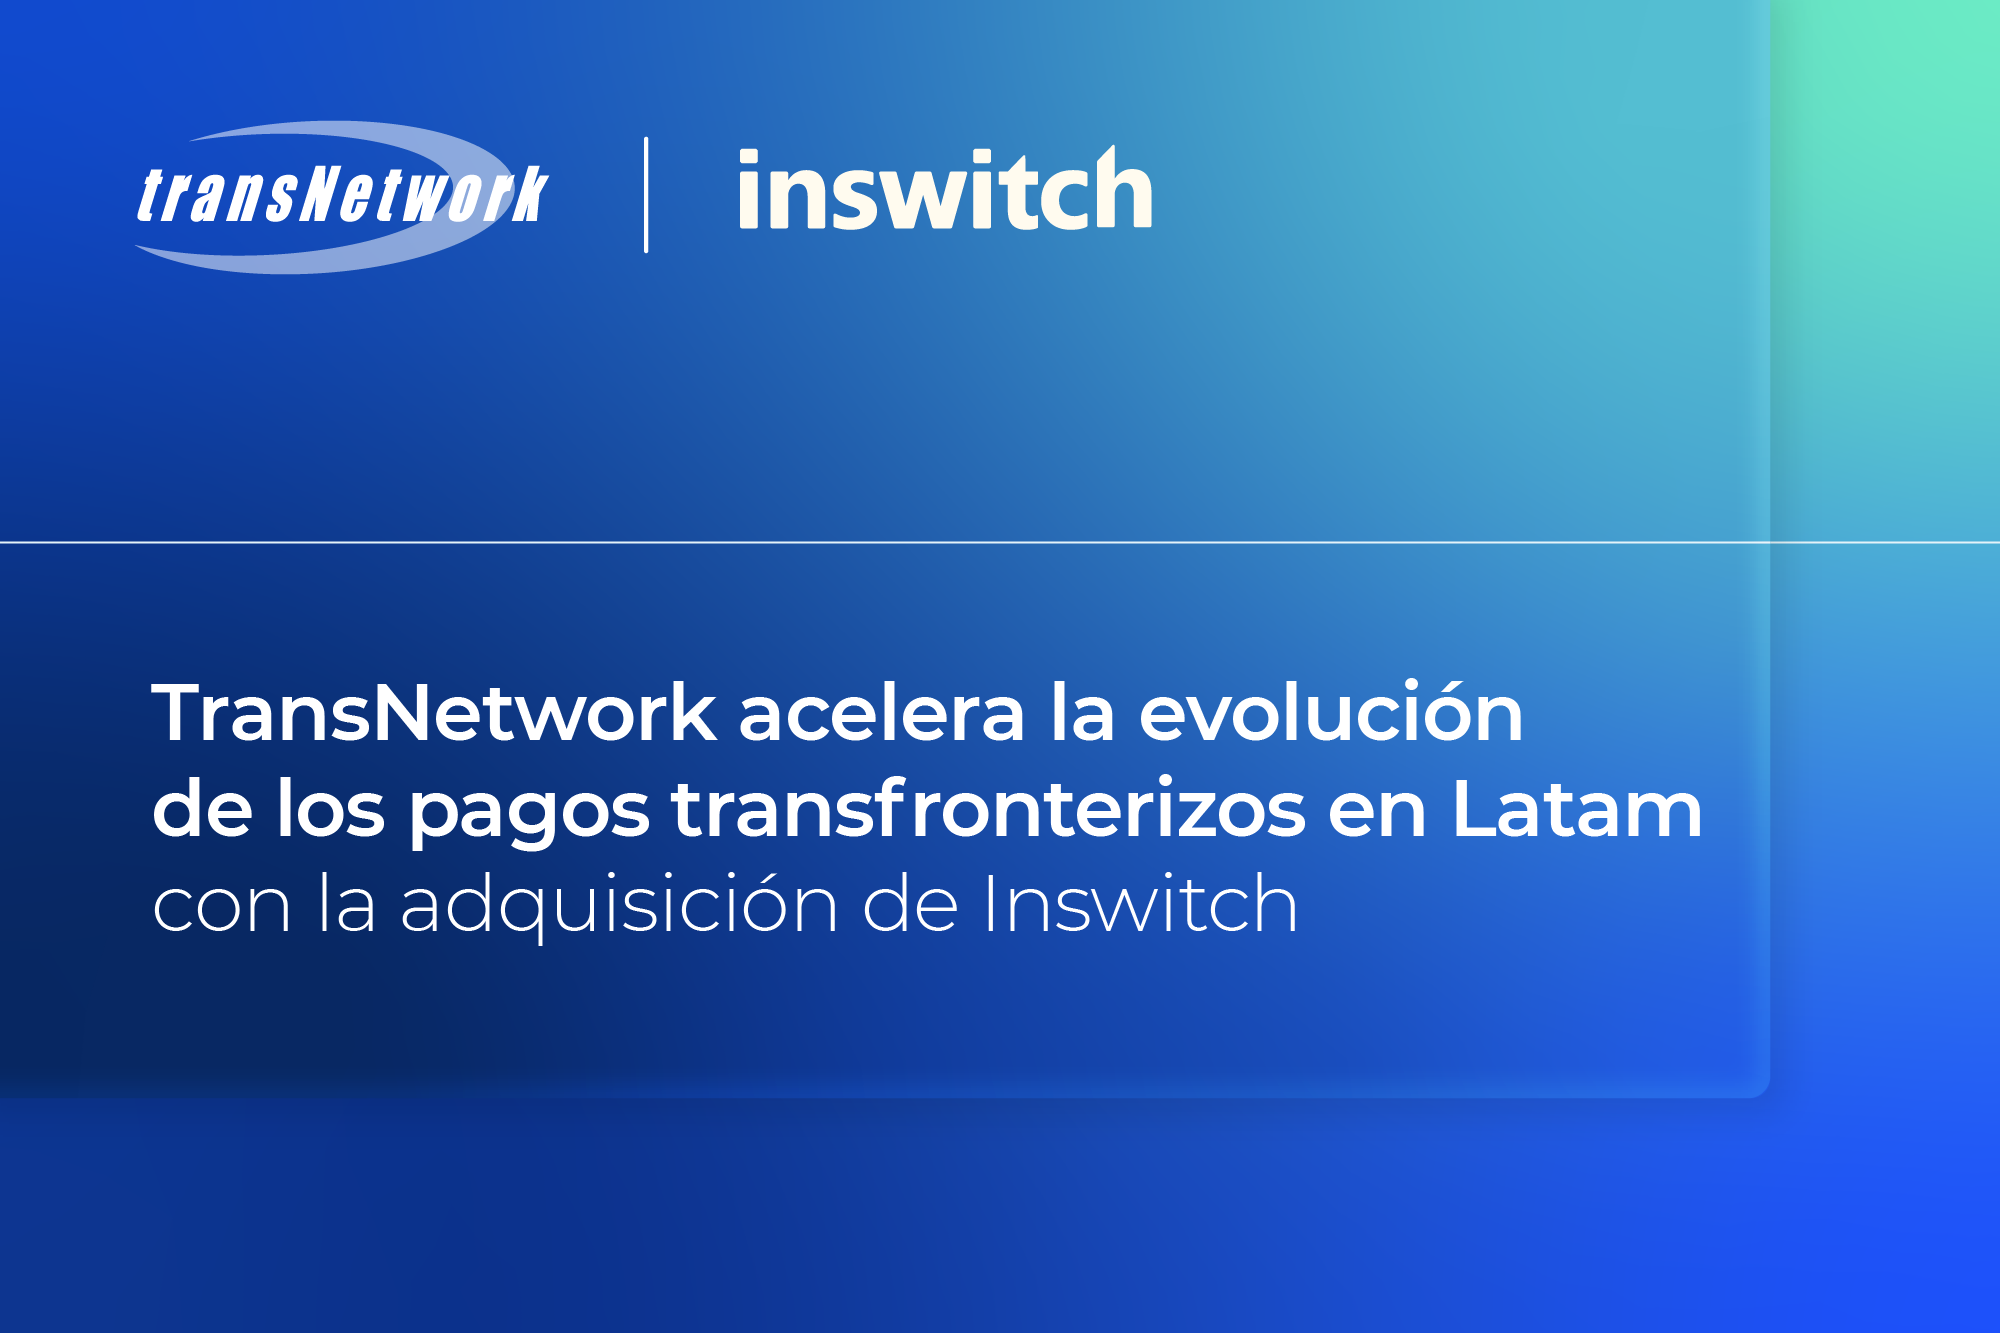 TransNetwork adquiere Inswitch para impulsar el futuro de la banca y los pagos digitales transfronterizos en América Latina.